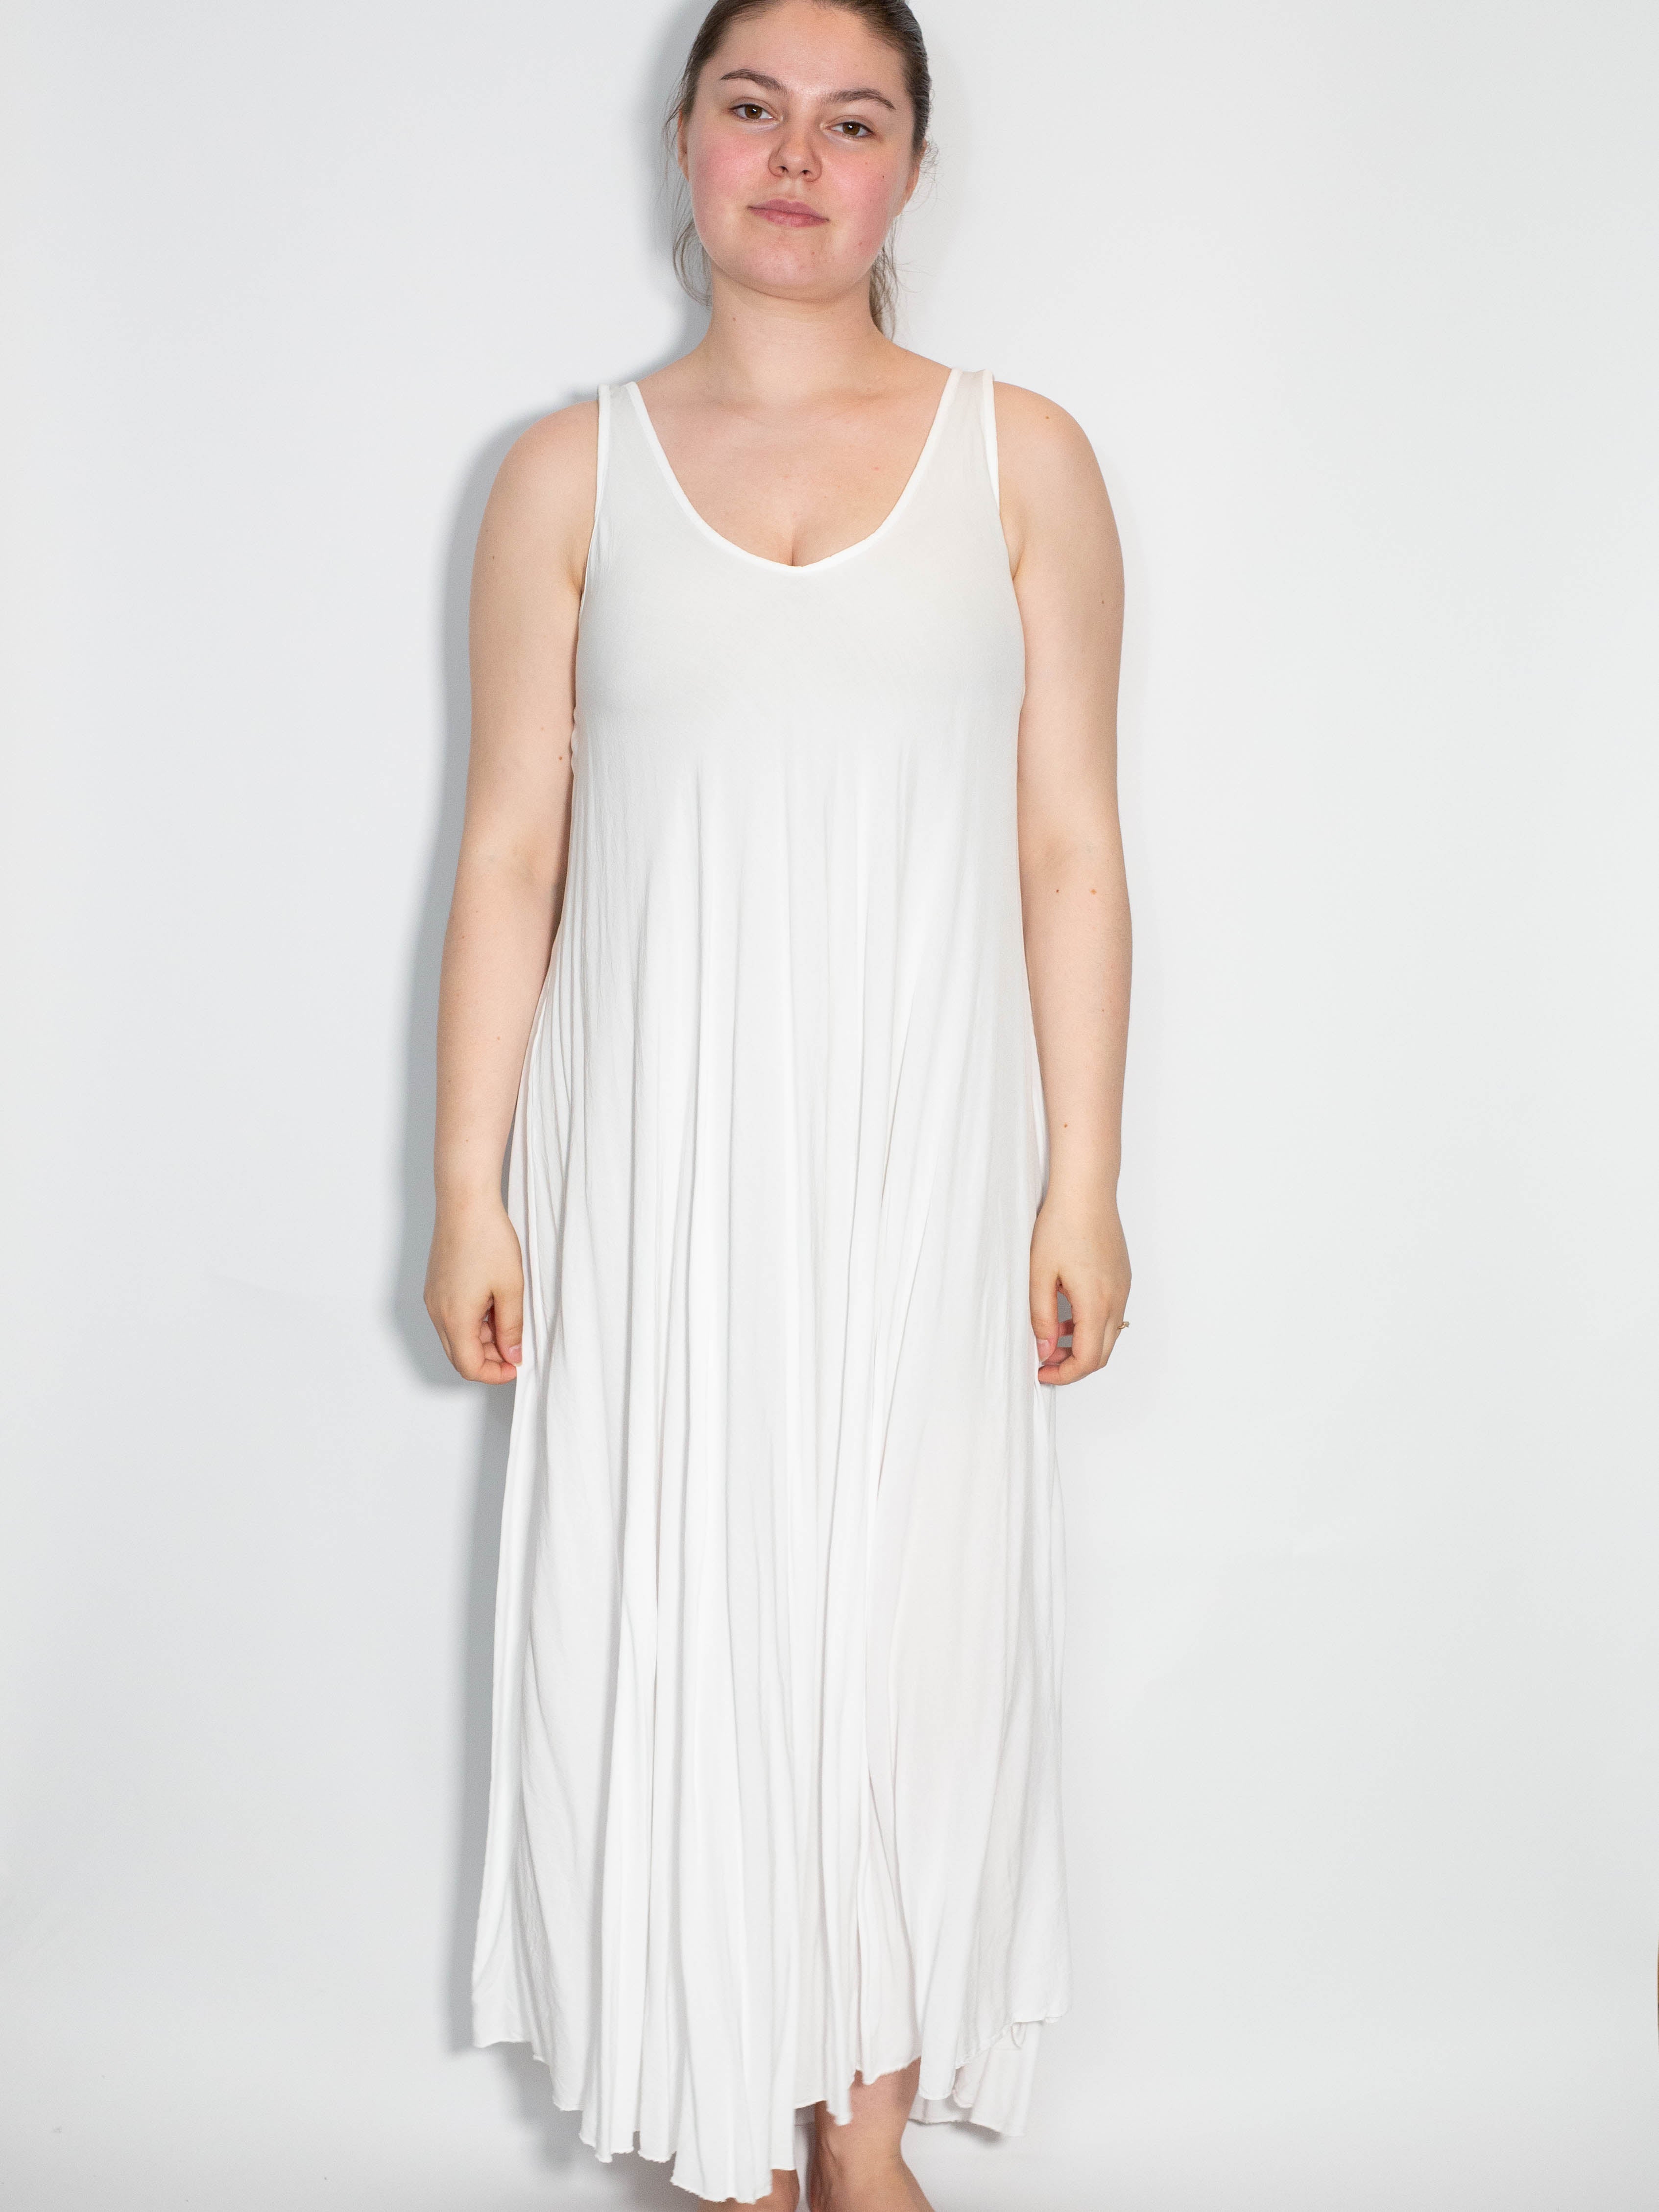 Lang a shape kjole - Brystmål 120cm - Ingen returret